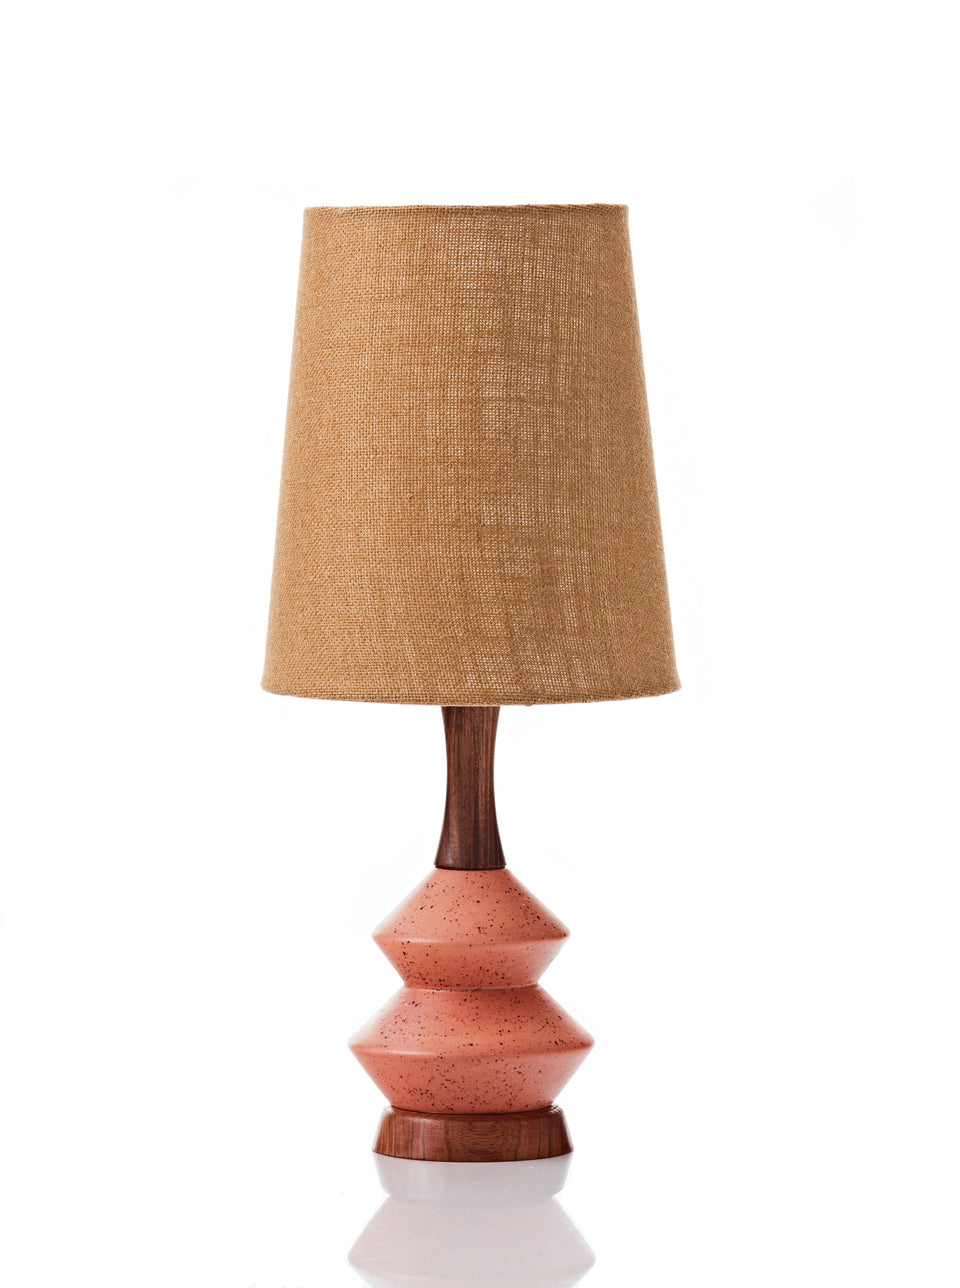 Athena Lamp • Small - Copper Hessian - SALE